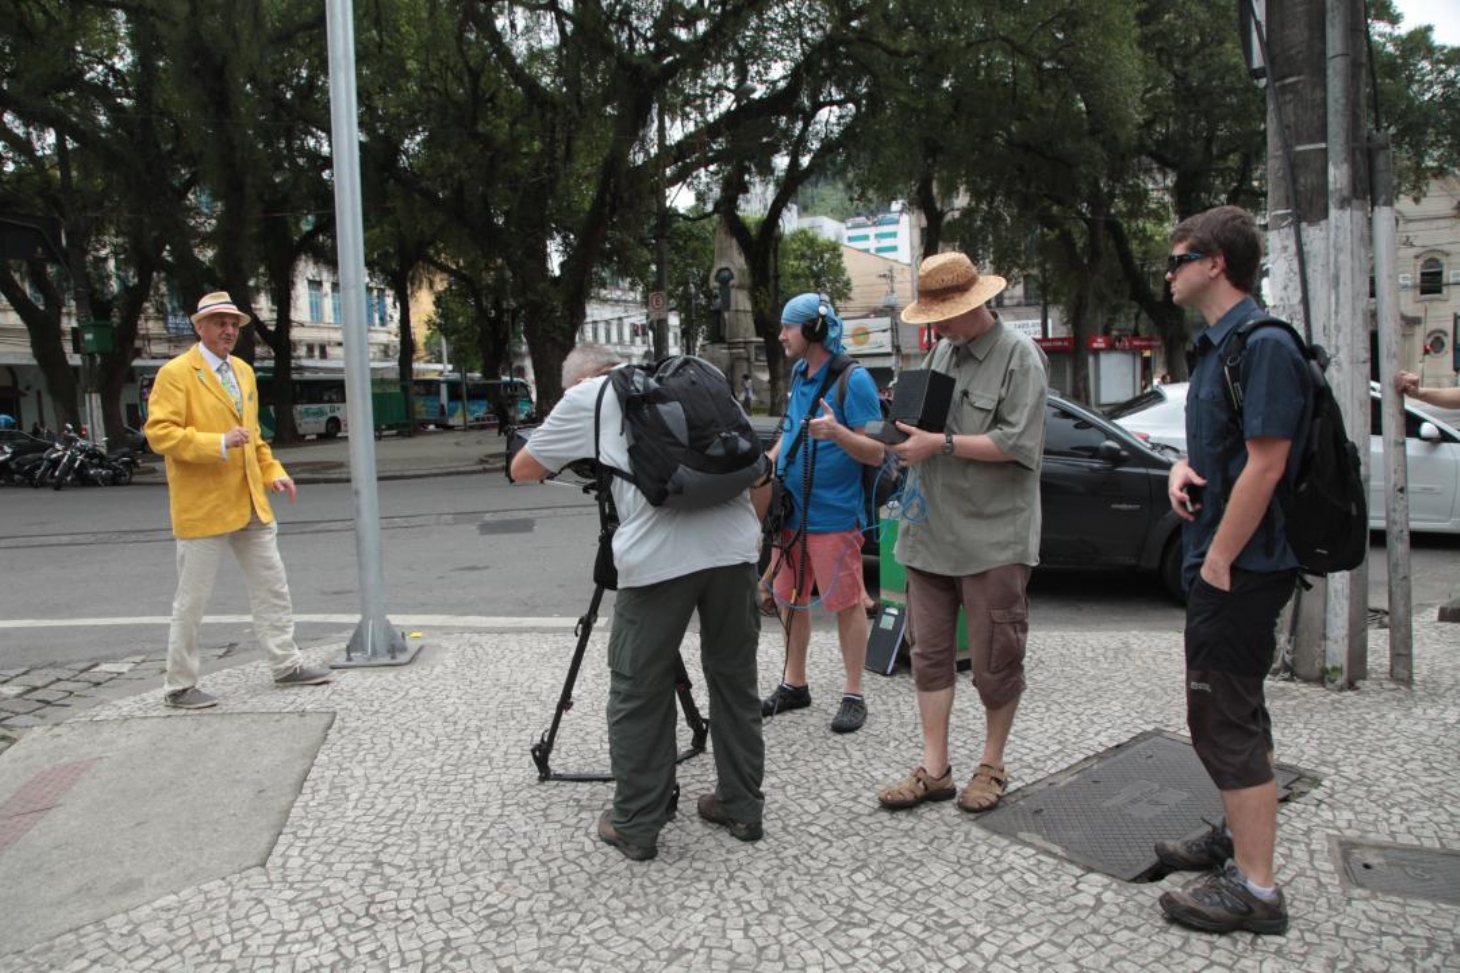 Concurso vai estimular a produção de curtas-metragens em Santos | Jornal da Orla